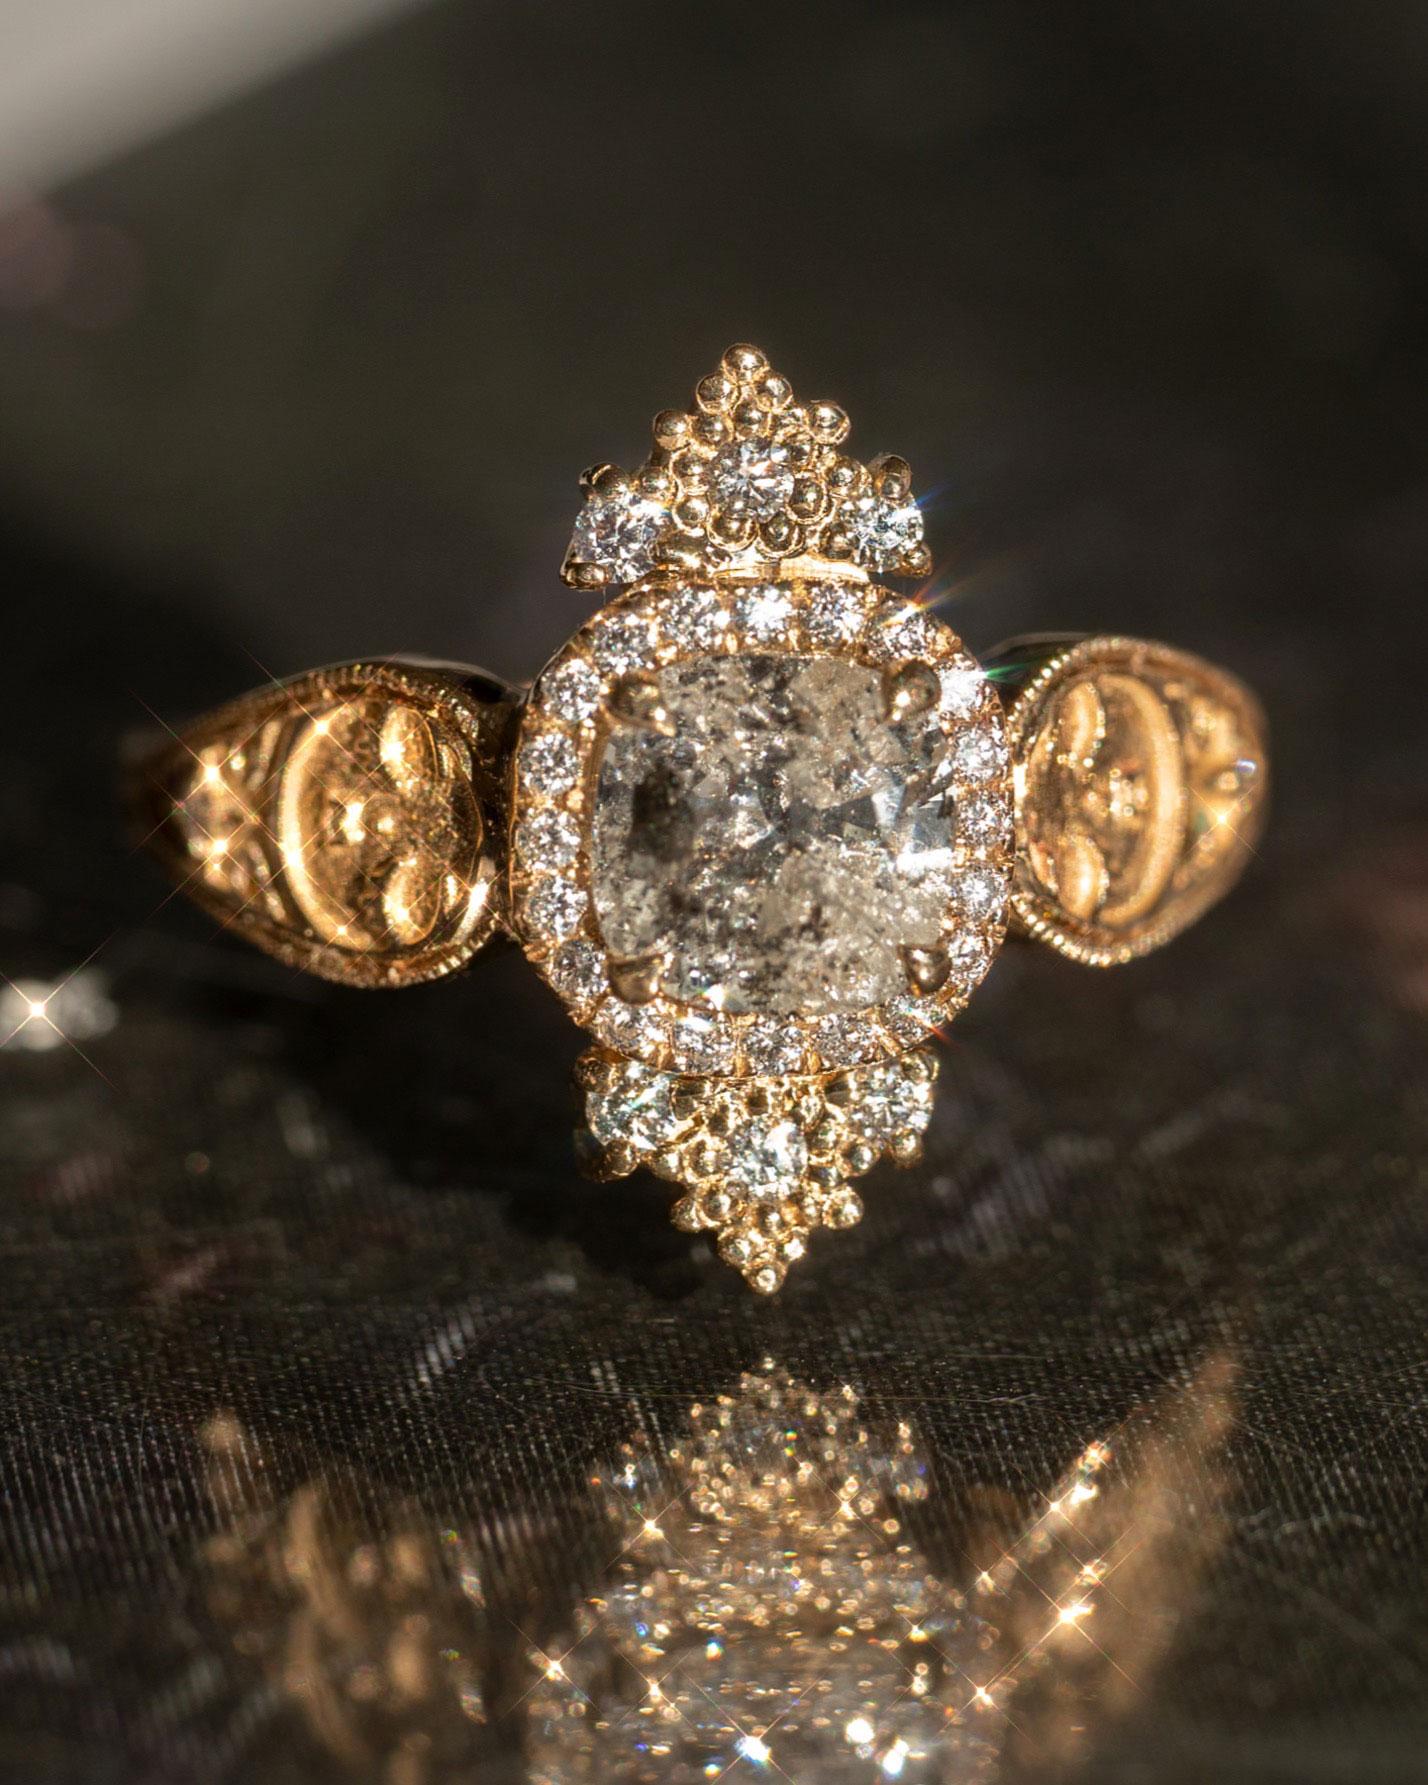 En vente :  Bague Dreamers de 1 carat de diamants certifiés GIA, taille coussin, pavé français 14